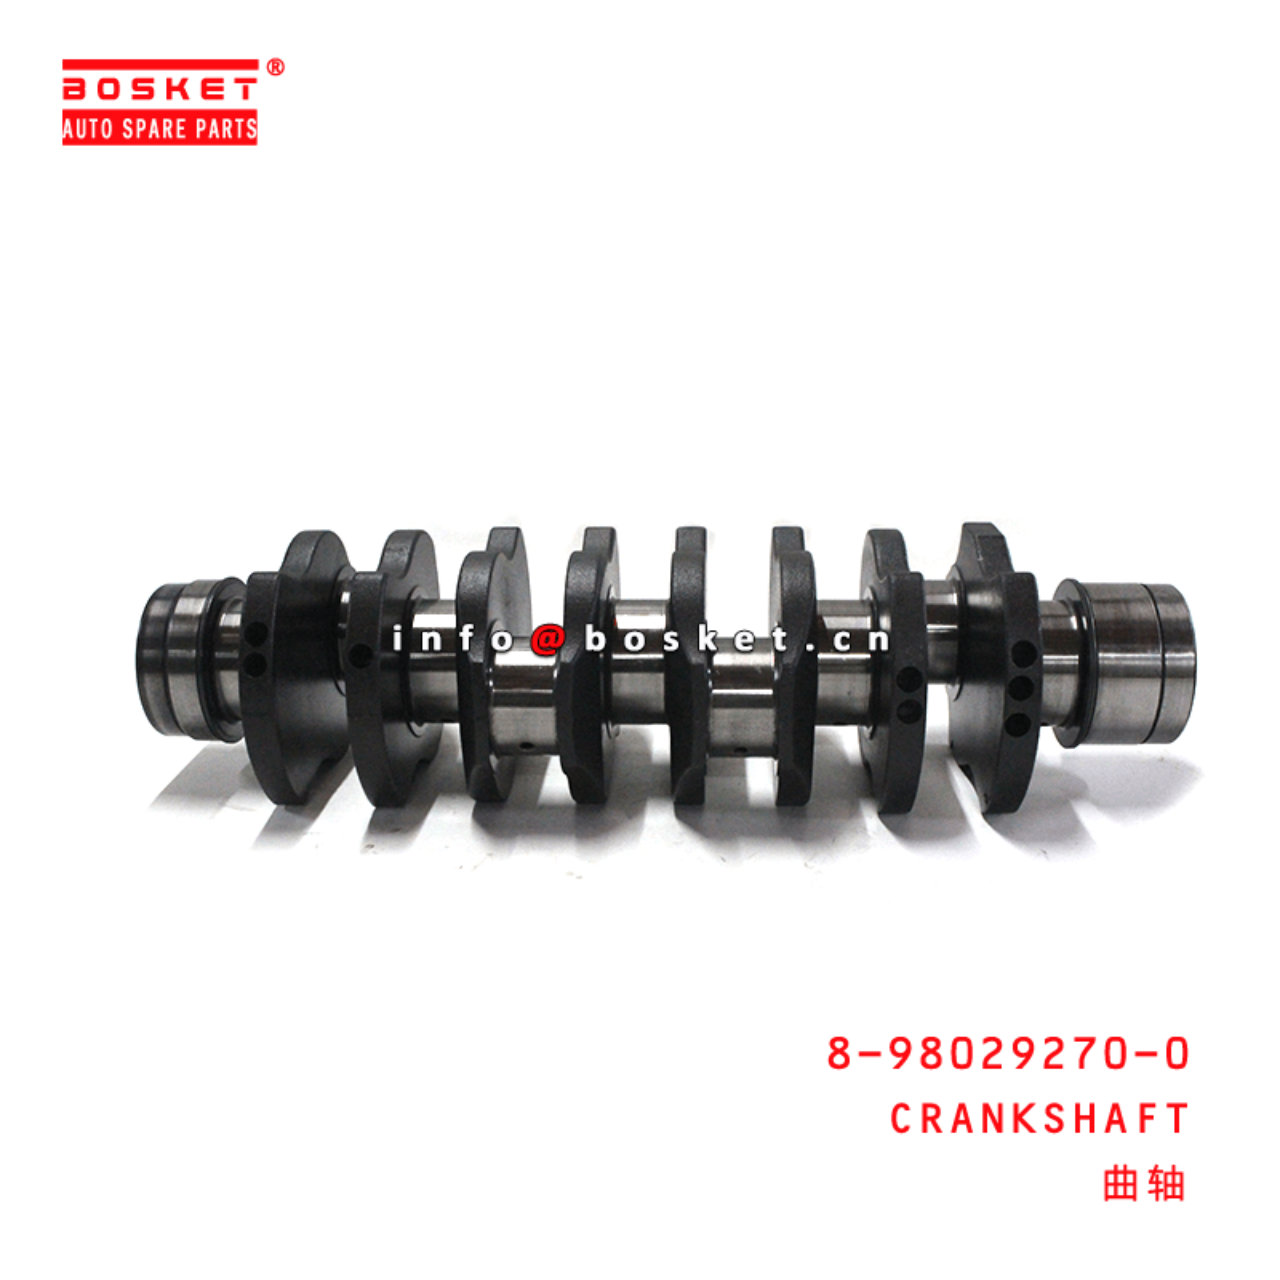 8-98029270-0 Crankshaft 8980292700 Suitable for ISUZU 700P 4HK1 